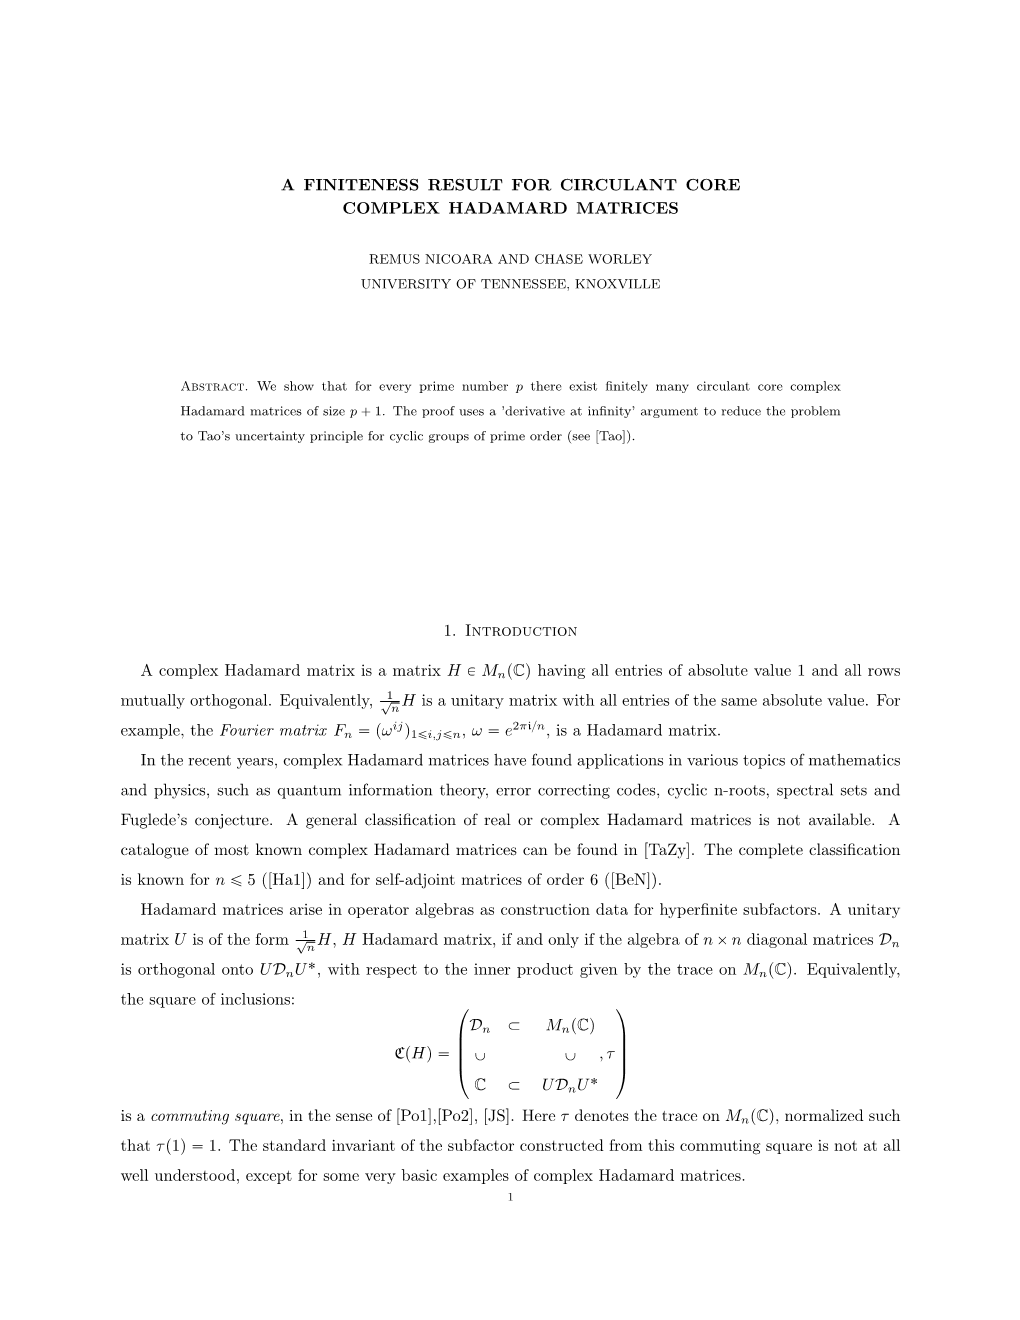 A Finiteness Result for Circulant Core Complex Hadamard Matrices